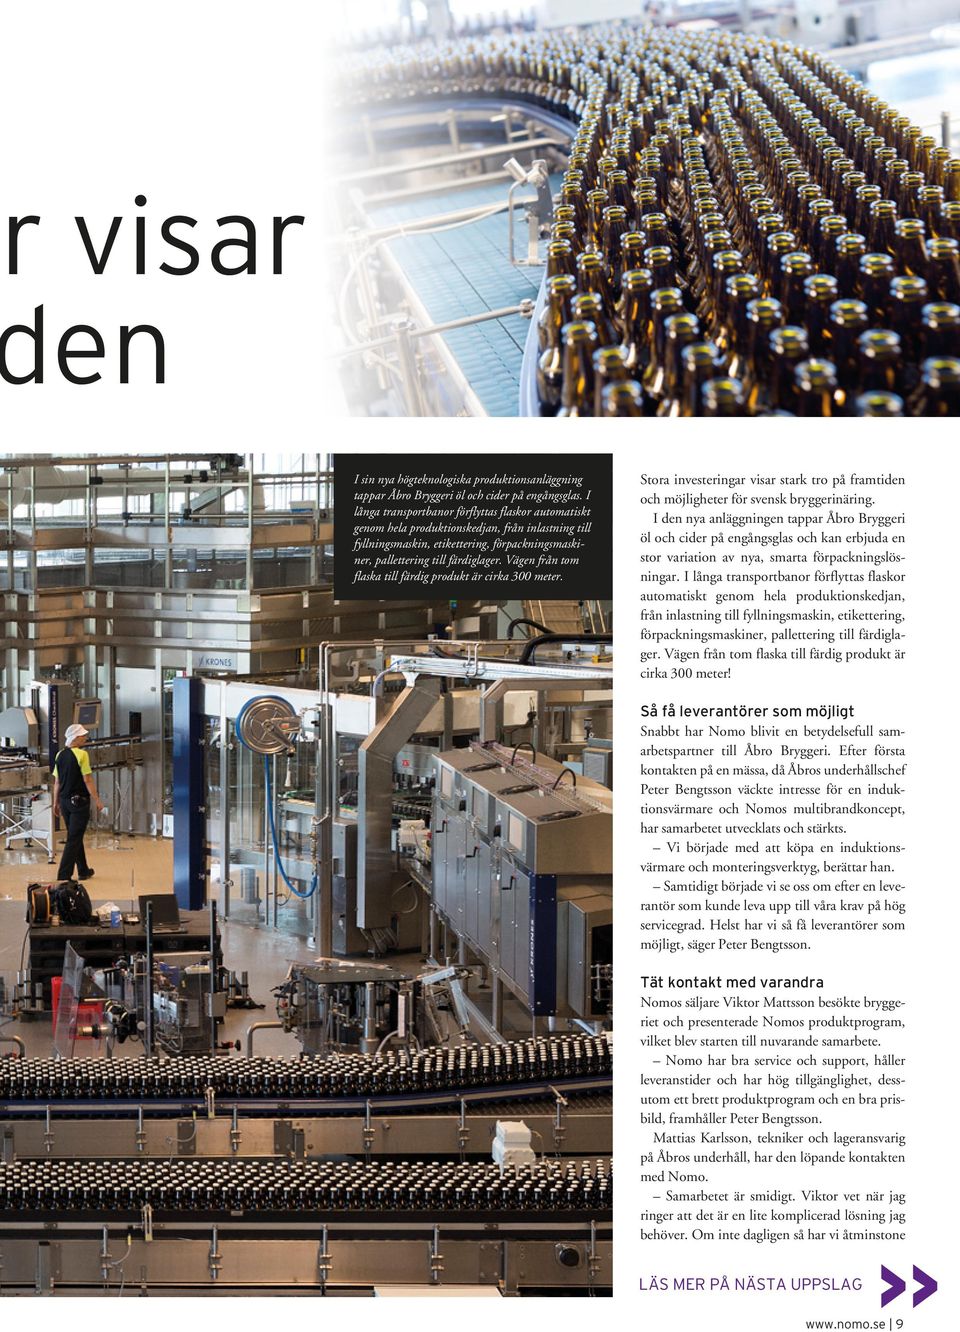 Vägen från tom flaska till färdig produkt är cirka 300 meter. Stora investeringar visar stark tro på framtiden och möjligheter för svensk bryggerinäring.